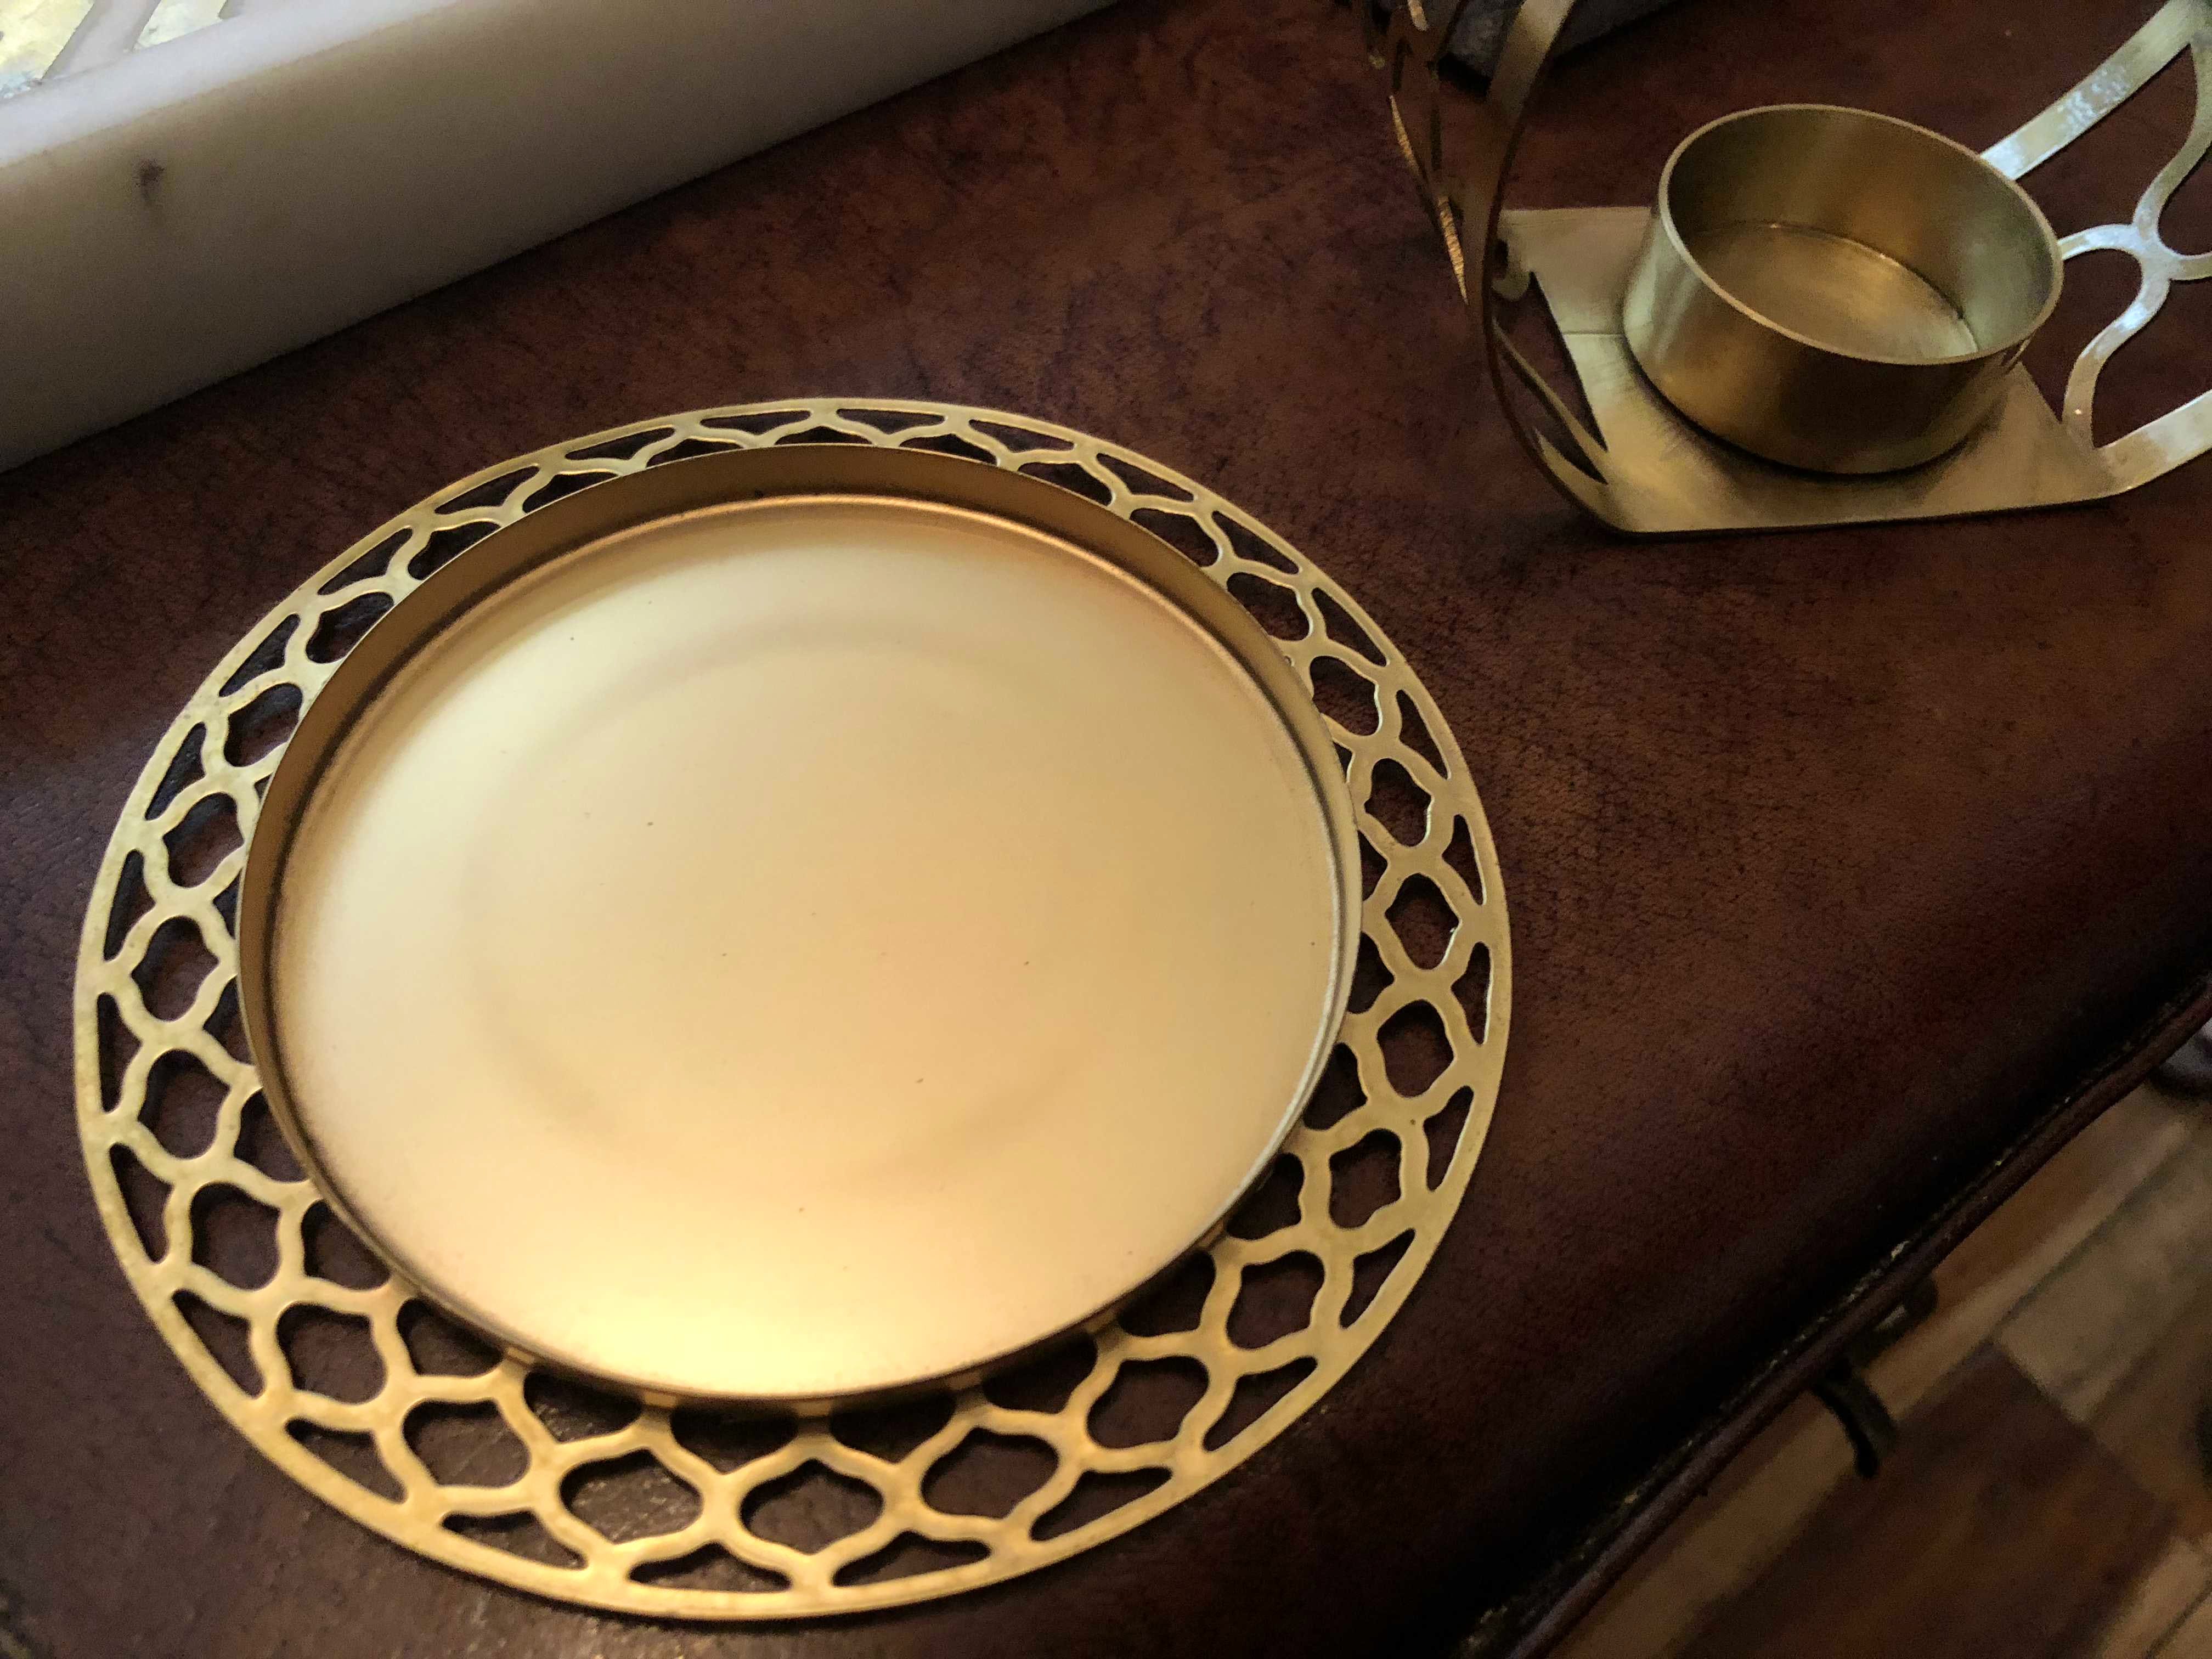 Dishware,Plate,Platter,Tableware,Porcelain,Serveware,Saucer,Dinnerware set,Circle,Metal